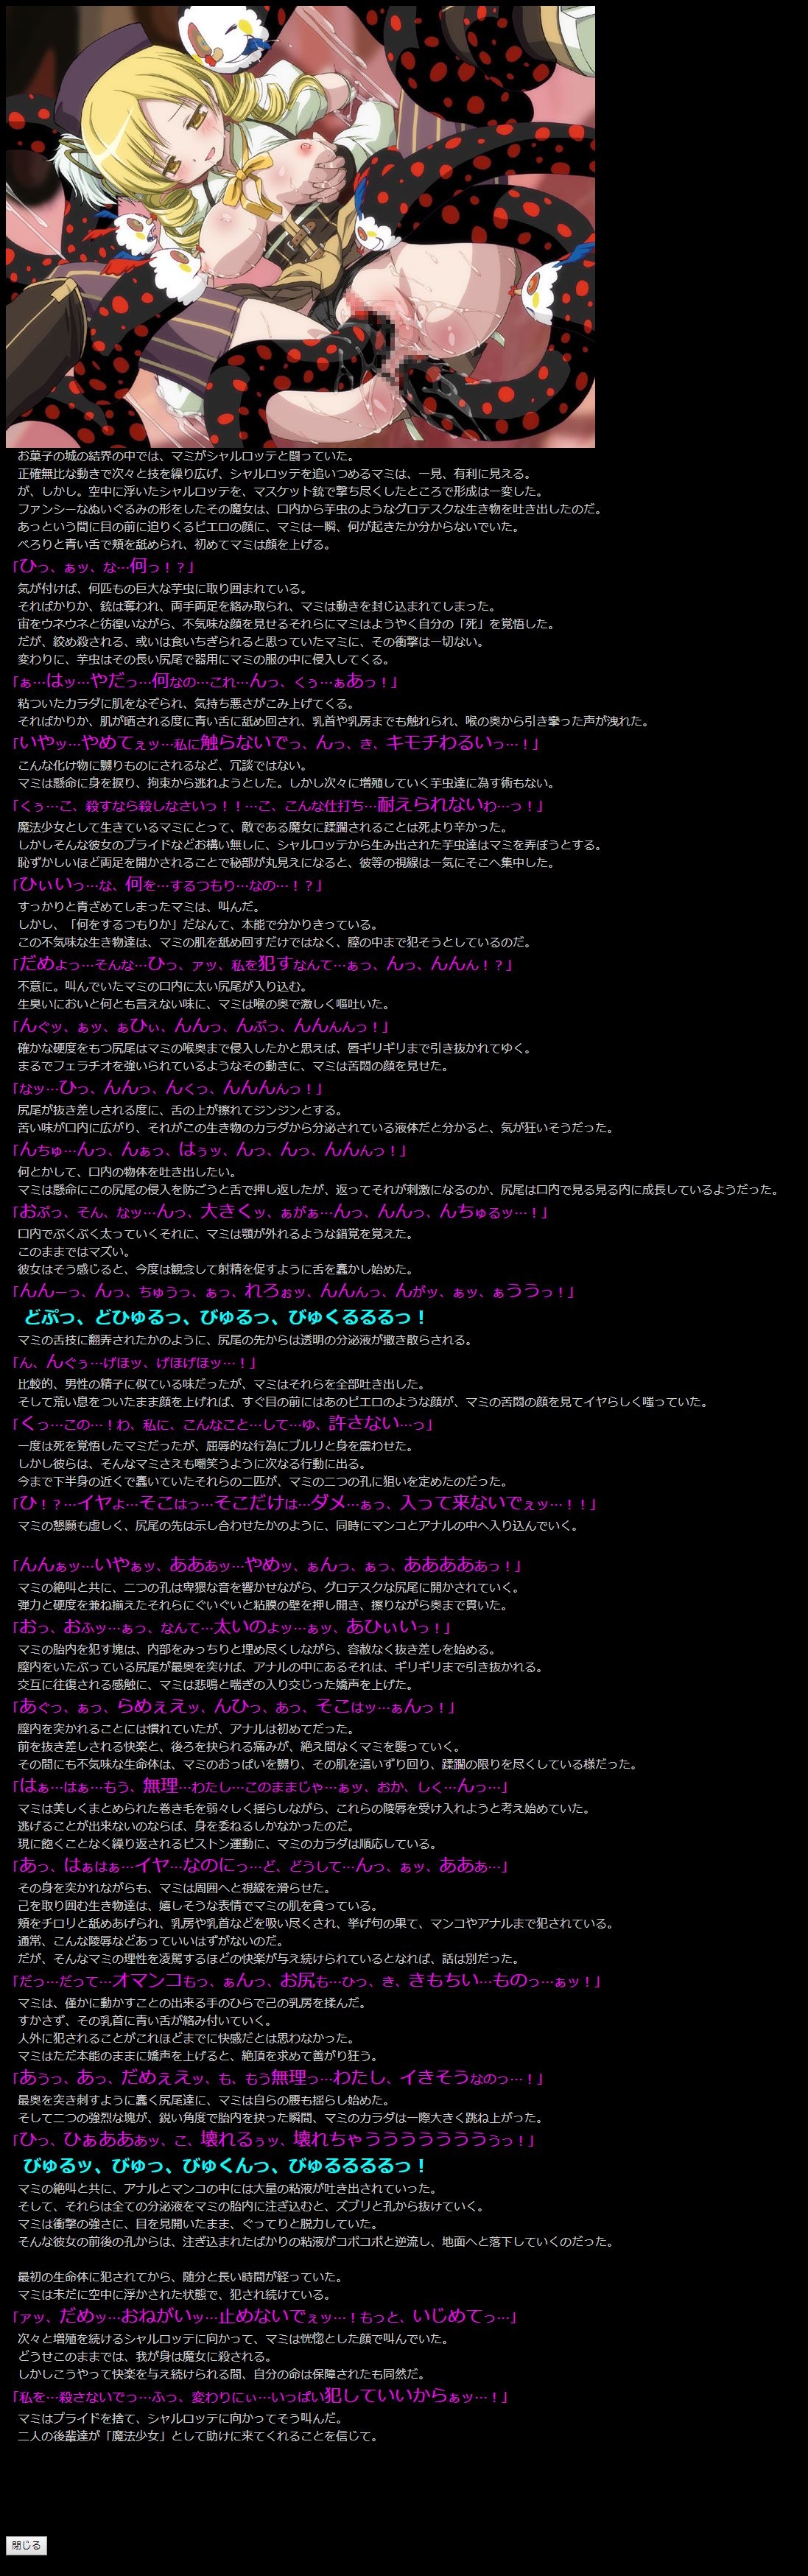 (COMIC1☆5) [LolitaChannel (Arigase Shinji)] Yuumei Chara Kannou Shousetsu CG Shuu No. 185!! Puella Magi Madoka Magica HaaHaa CG Shuu (Puella Magi Madoka Magica) 13